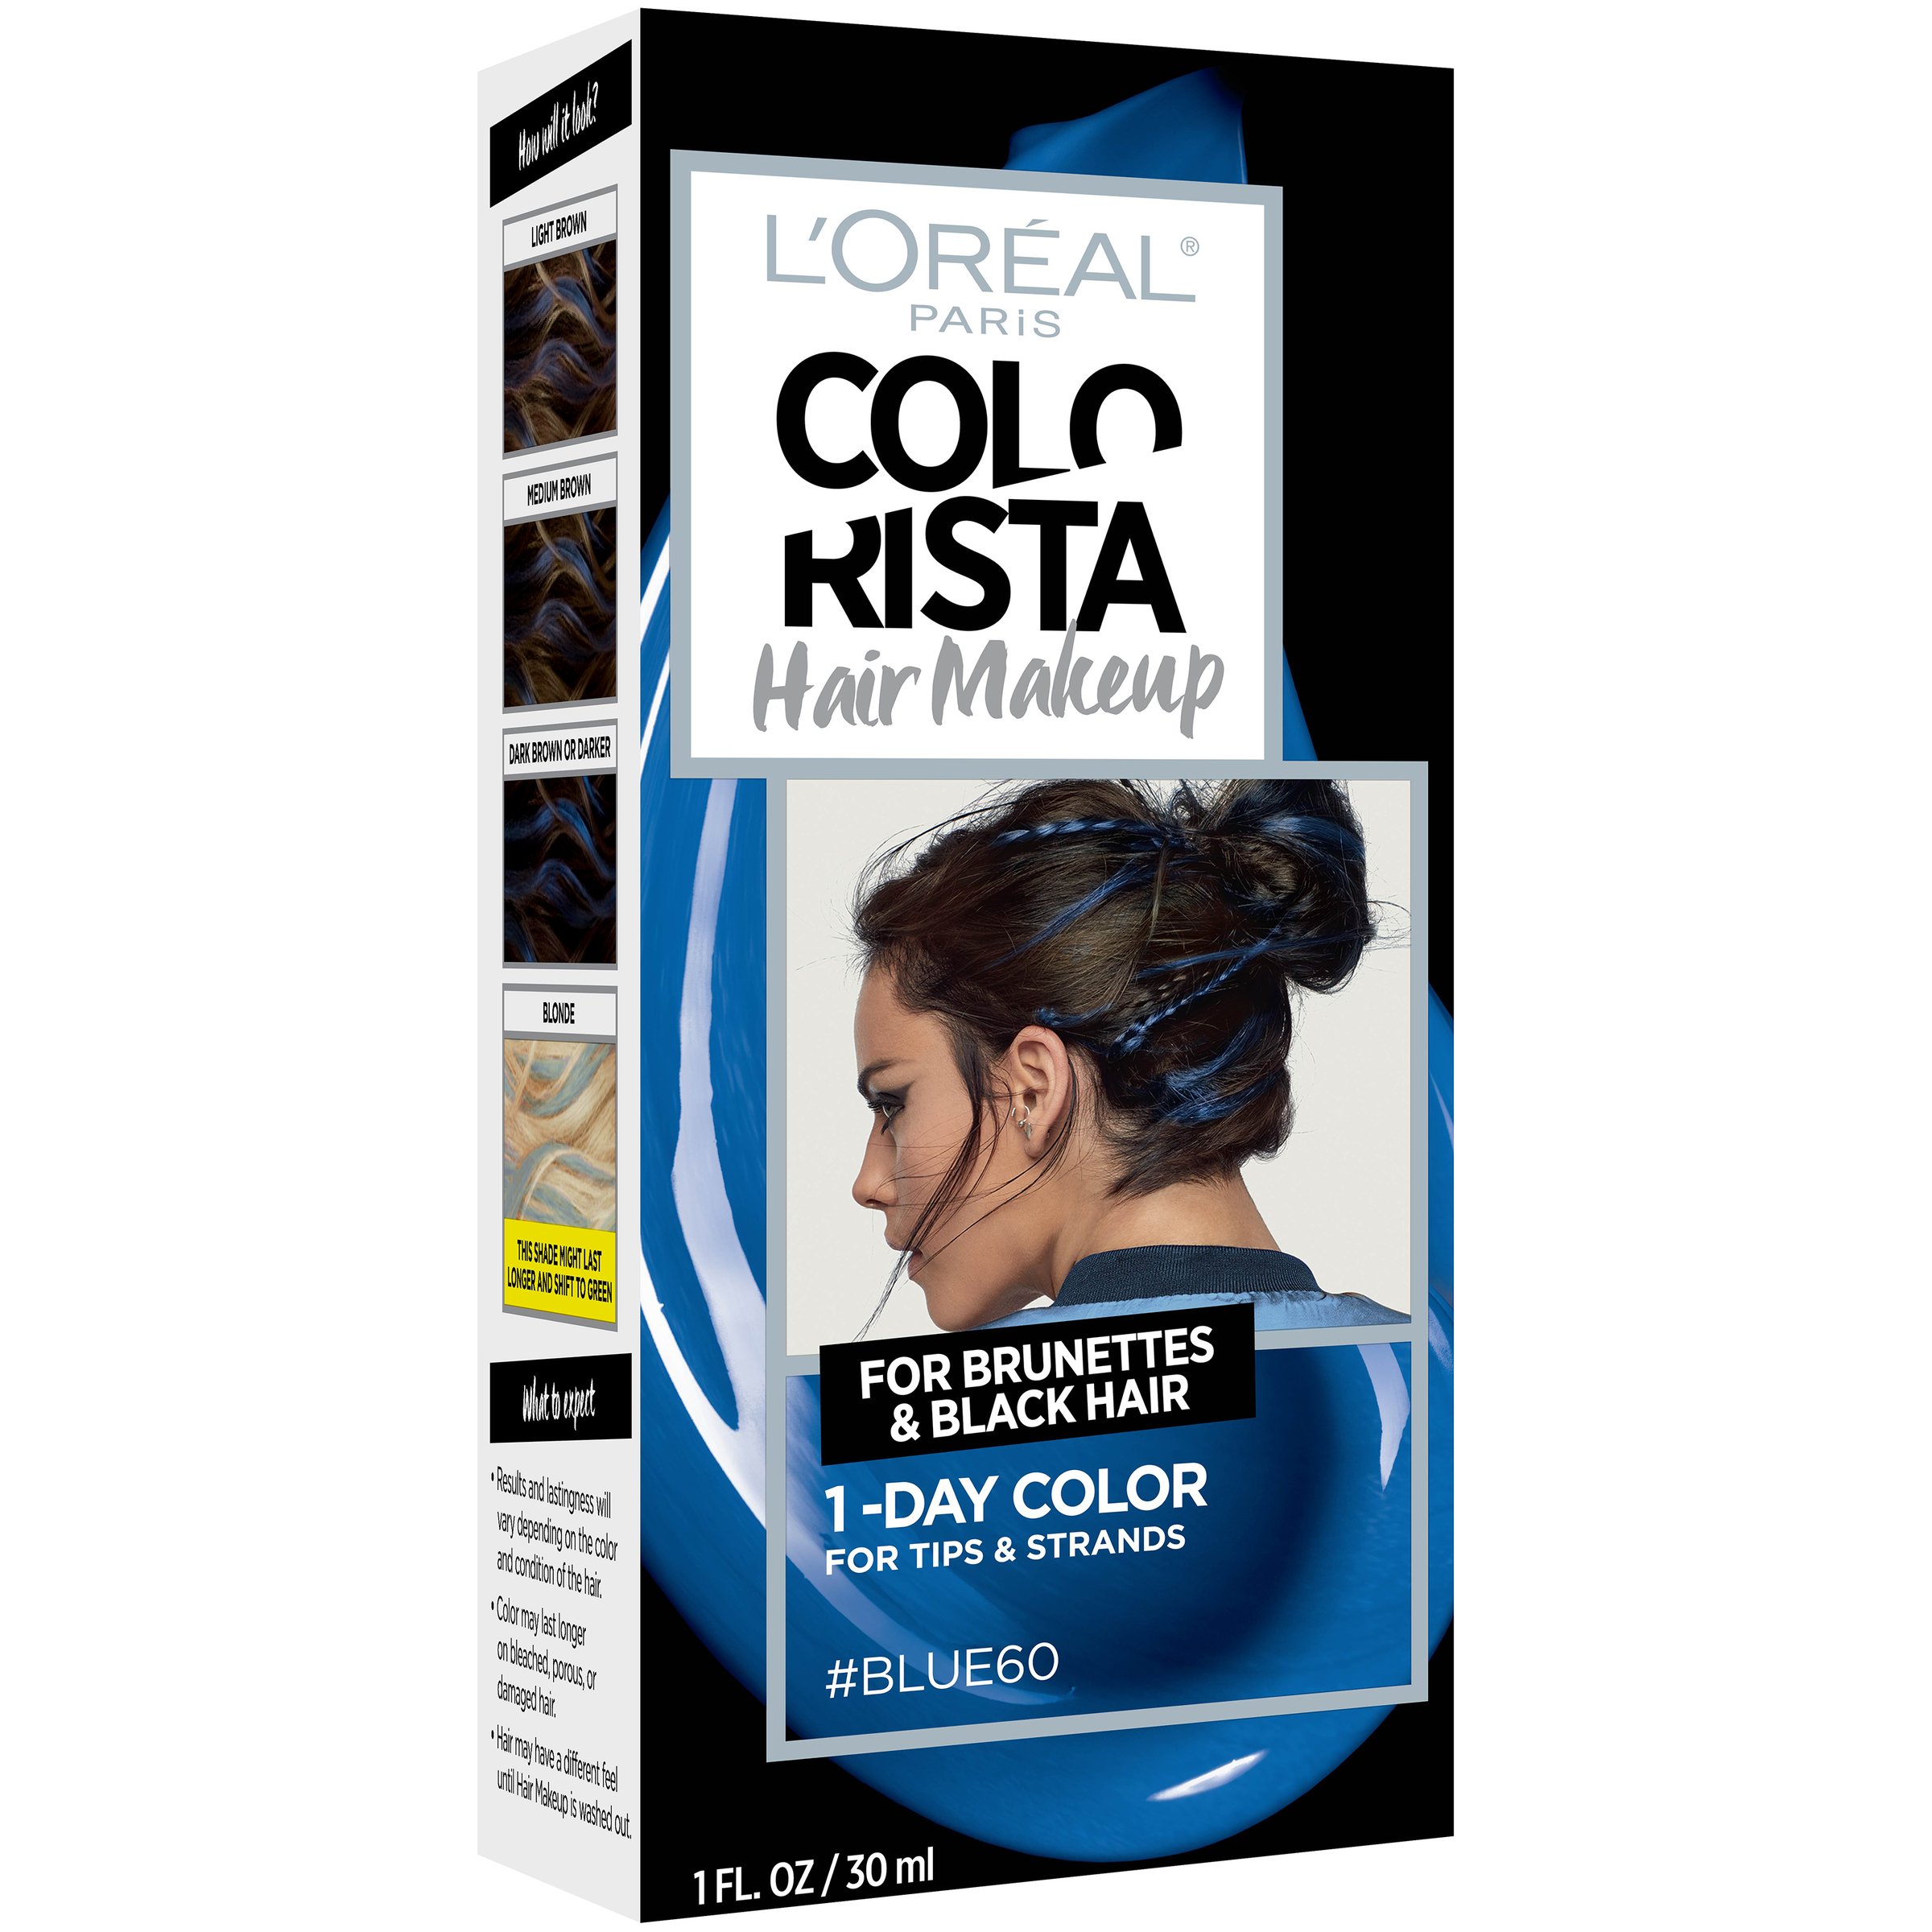 L Oreal Paris Colorista Hair Makeup 1 Day Hair Color Blue Shop Hair Color At H E B